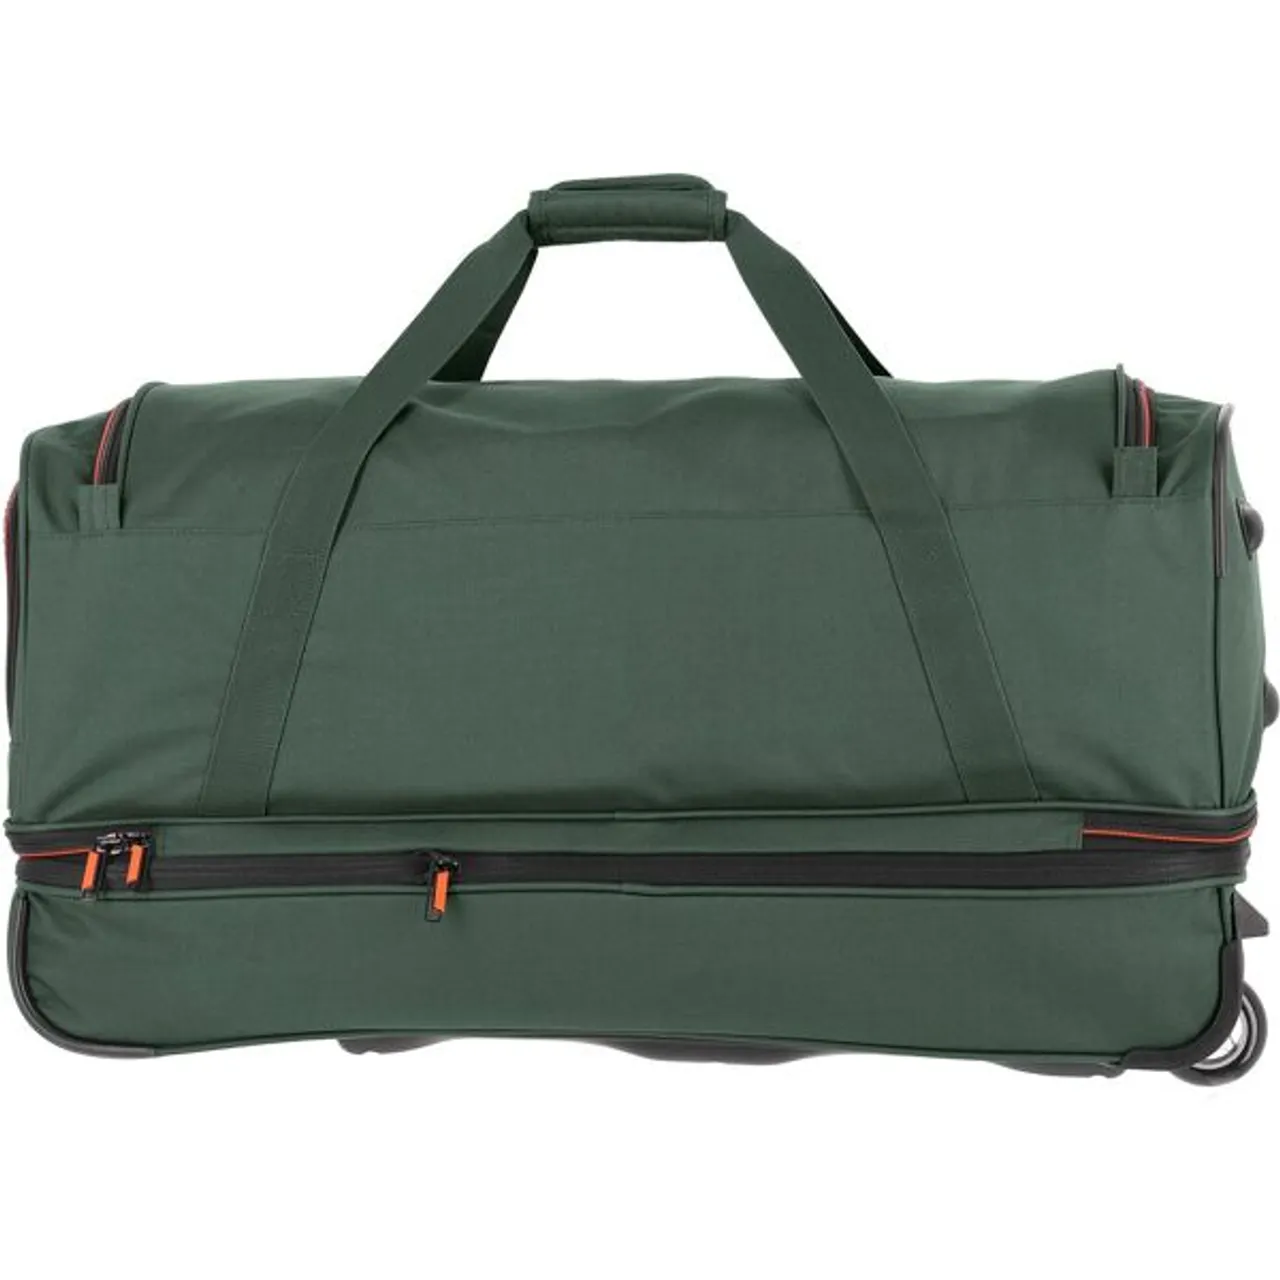 Reisetasche TRAVELITE "Basics, 70 cm, dunkelgrün" Gr. B/H/T: 70 cm x 38 cm x 37 cm, grün (dunkelgrün) Taschen Reisetaschen